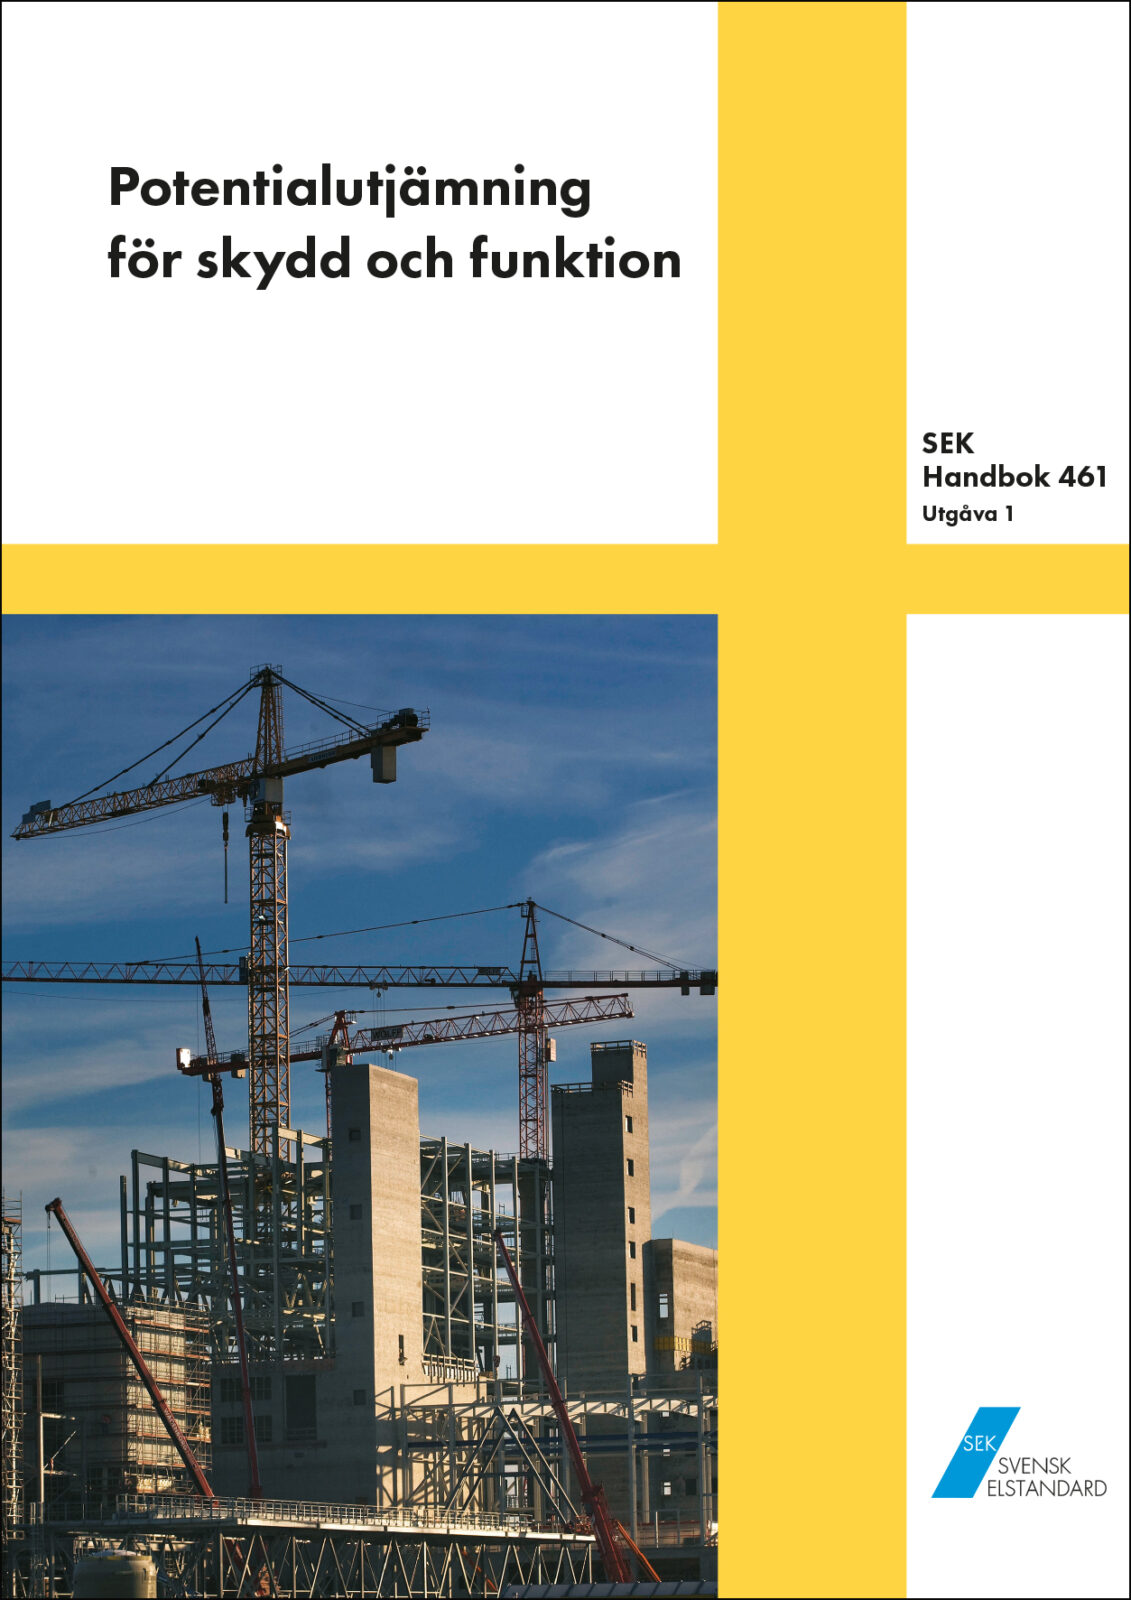 Köp SEK Handbok 461 om Potentialutjämning av EL-VIS. Välj PDF eller Bok. 